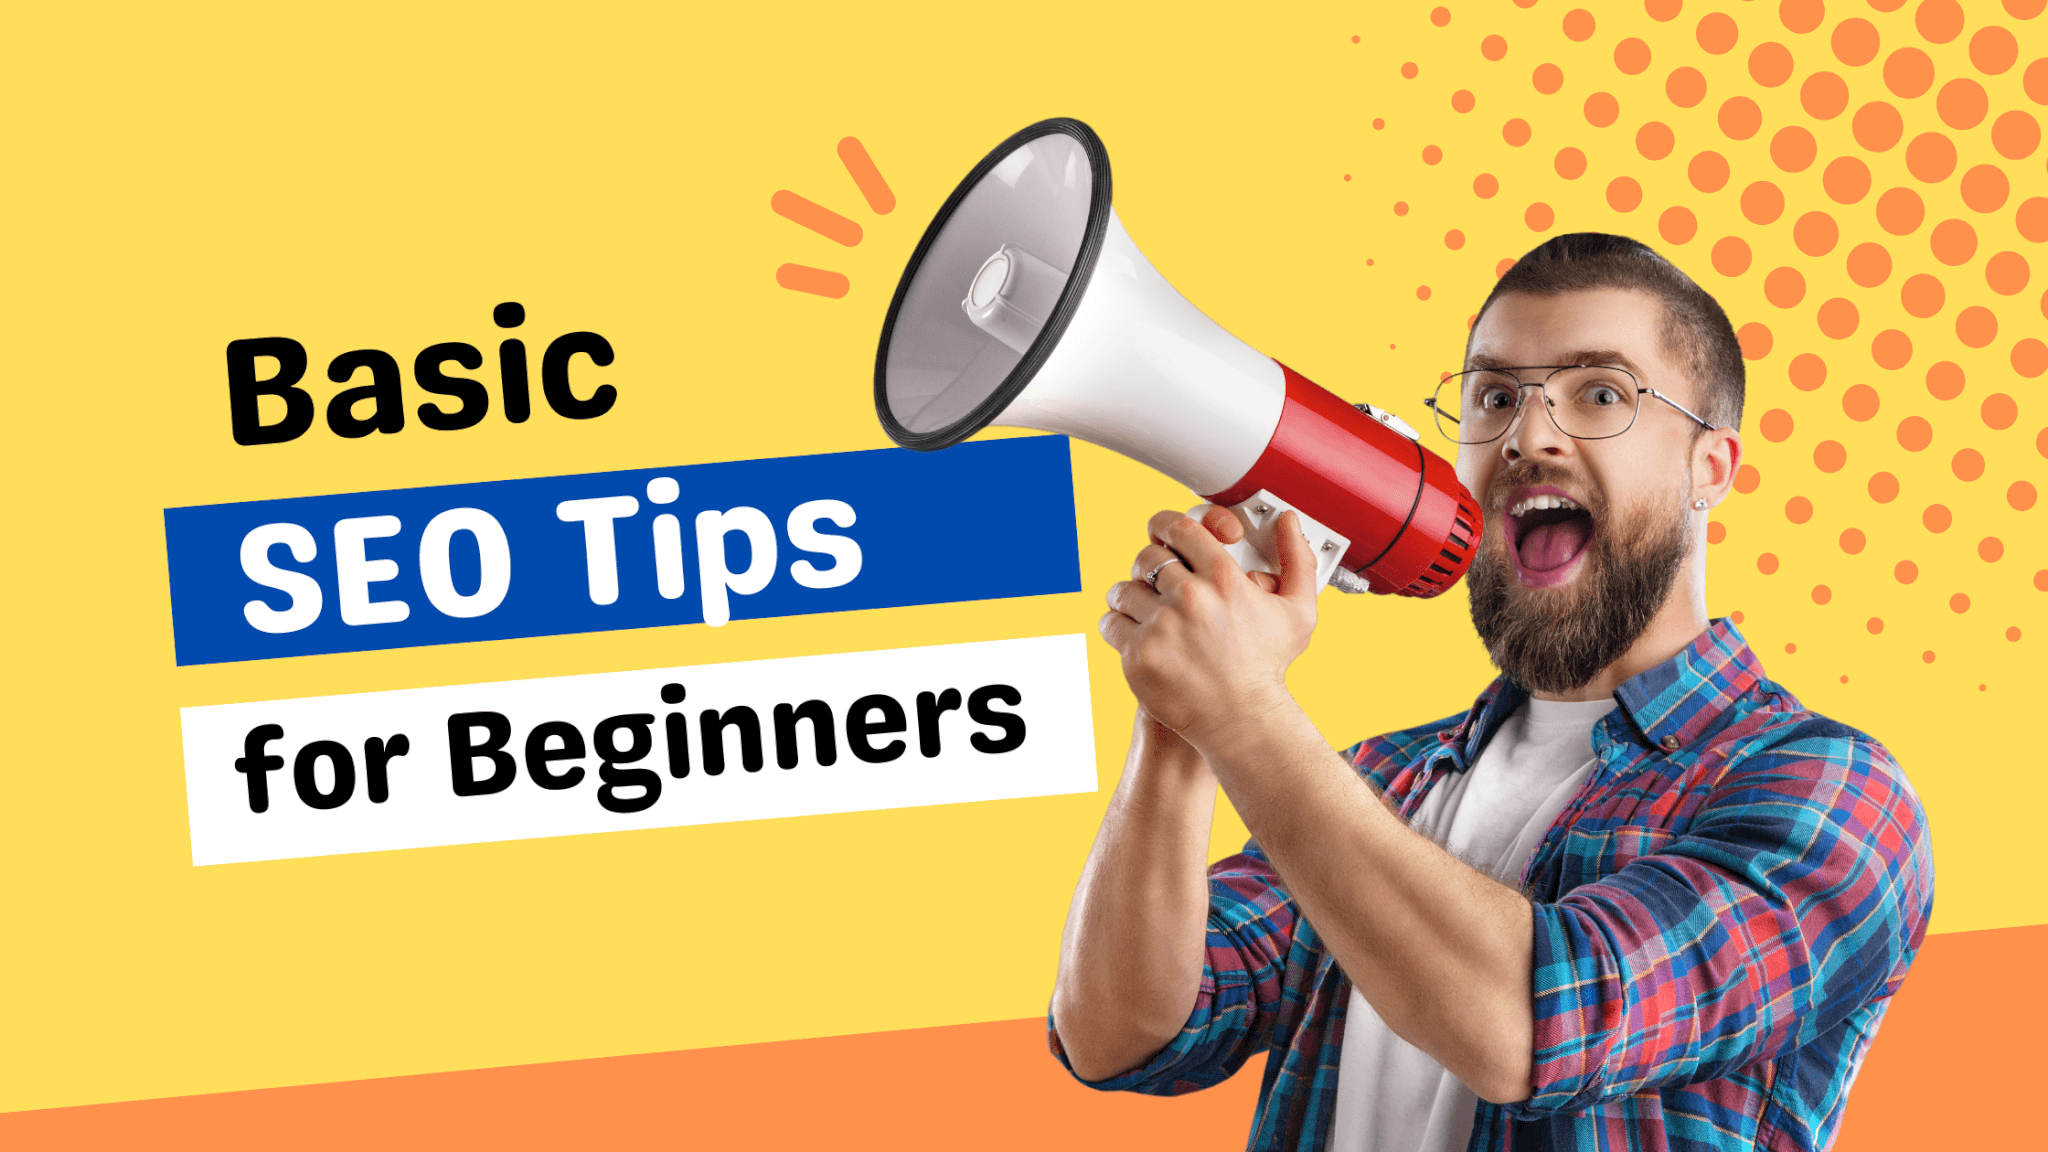 Basic SEO Tips for Beginners